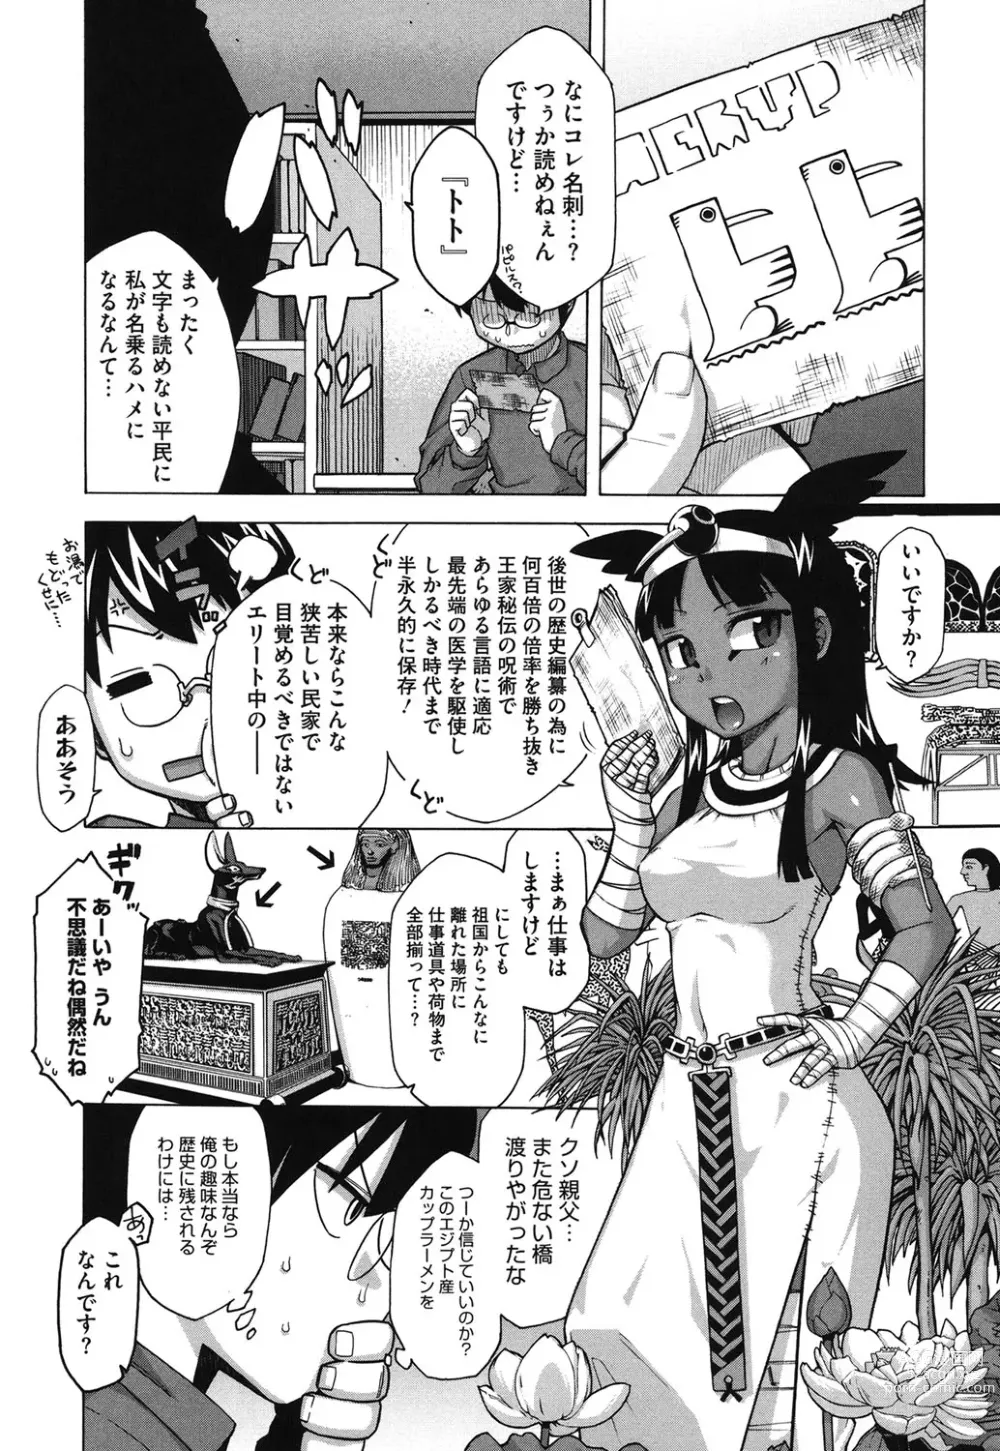 Page 6 of manga Sore wa Rekishi ni Kakanaide!